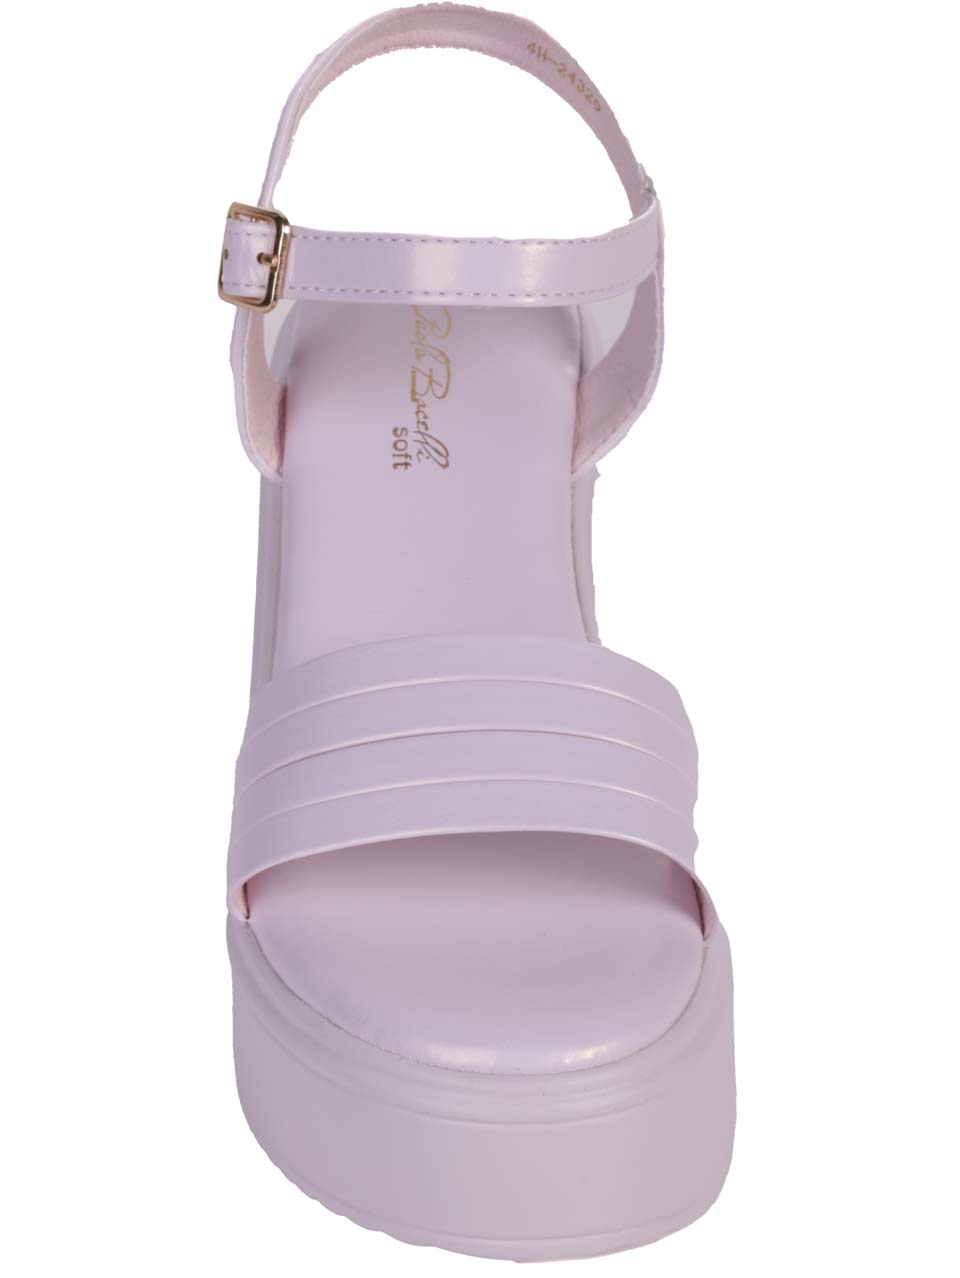 Ежедневни дамски сандали на платформа в лилав цвят 4H-24320 purple